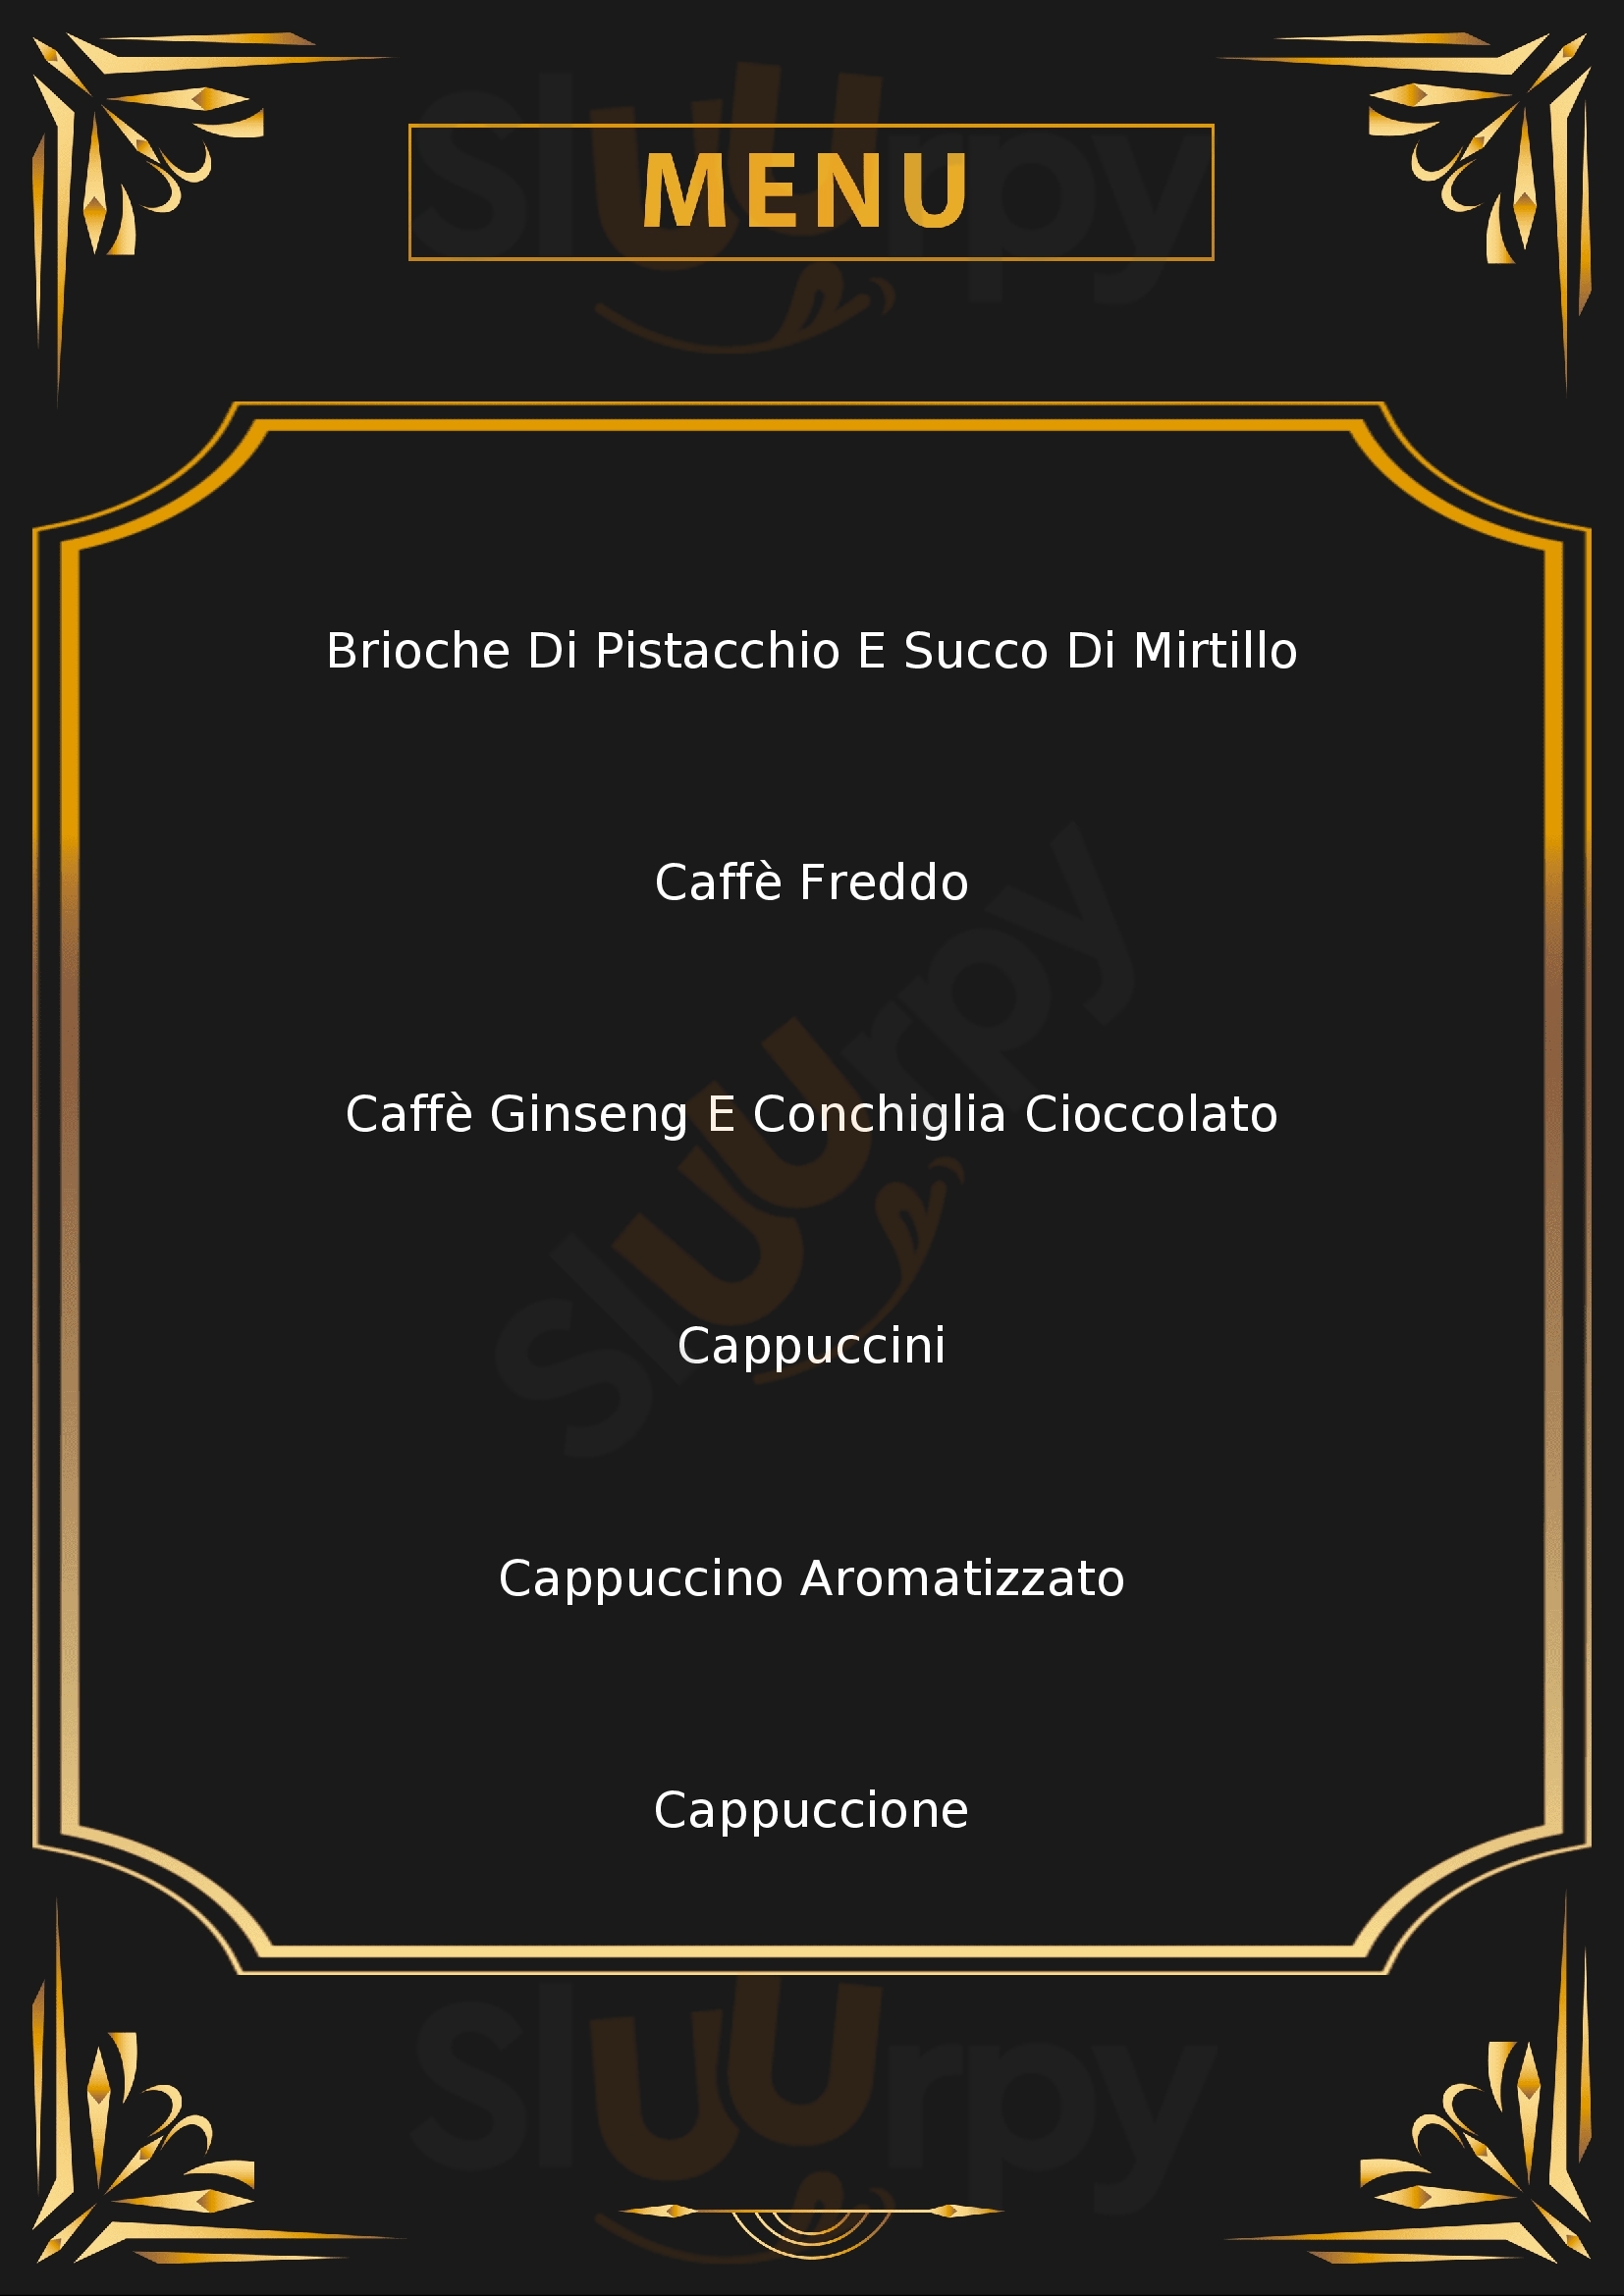 Caffe & Caffe Monza menù 1 pagina